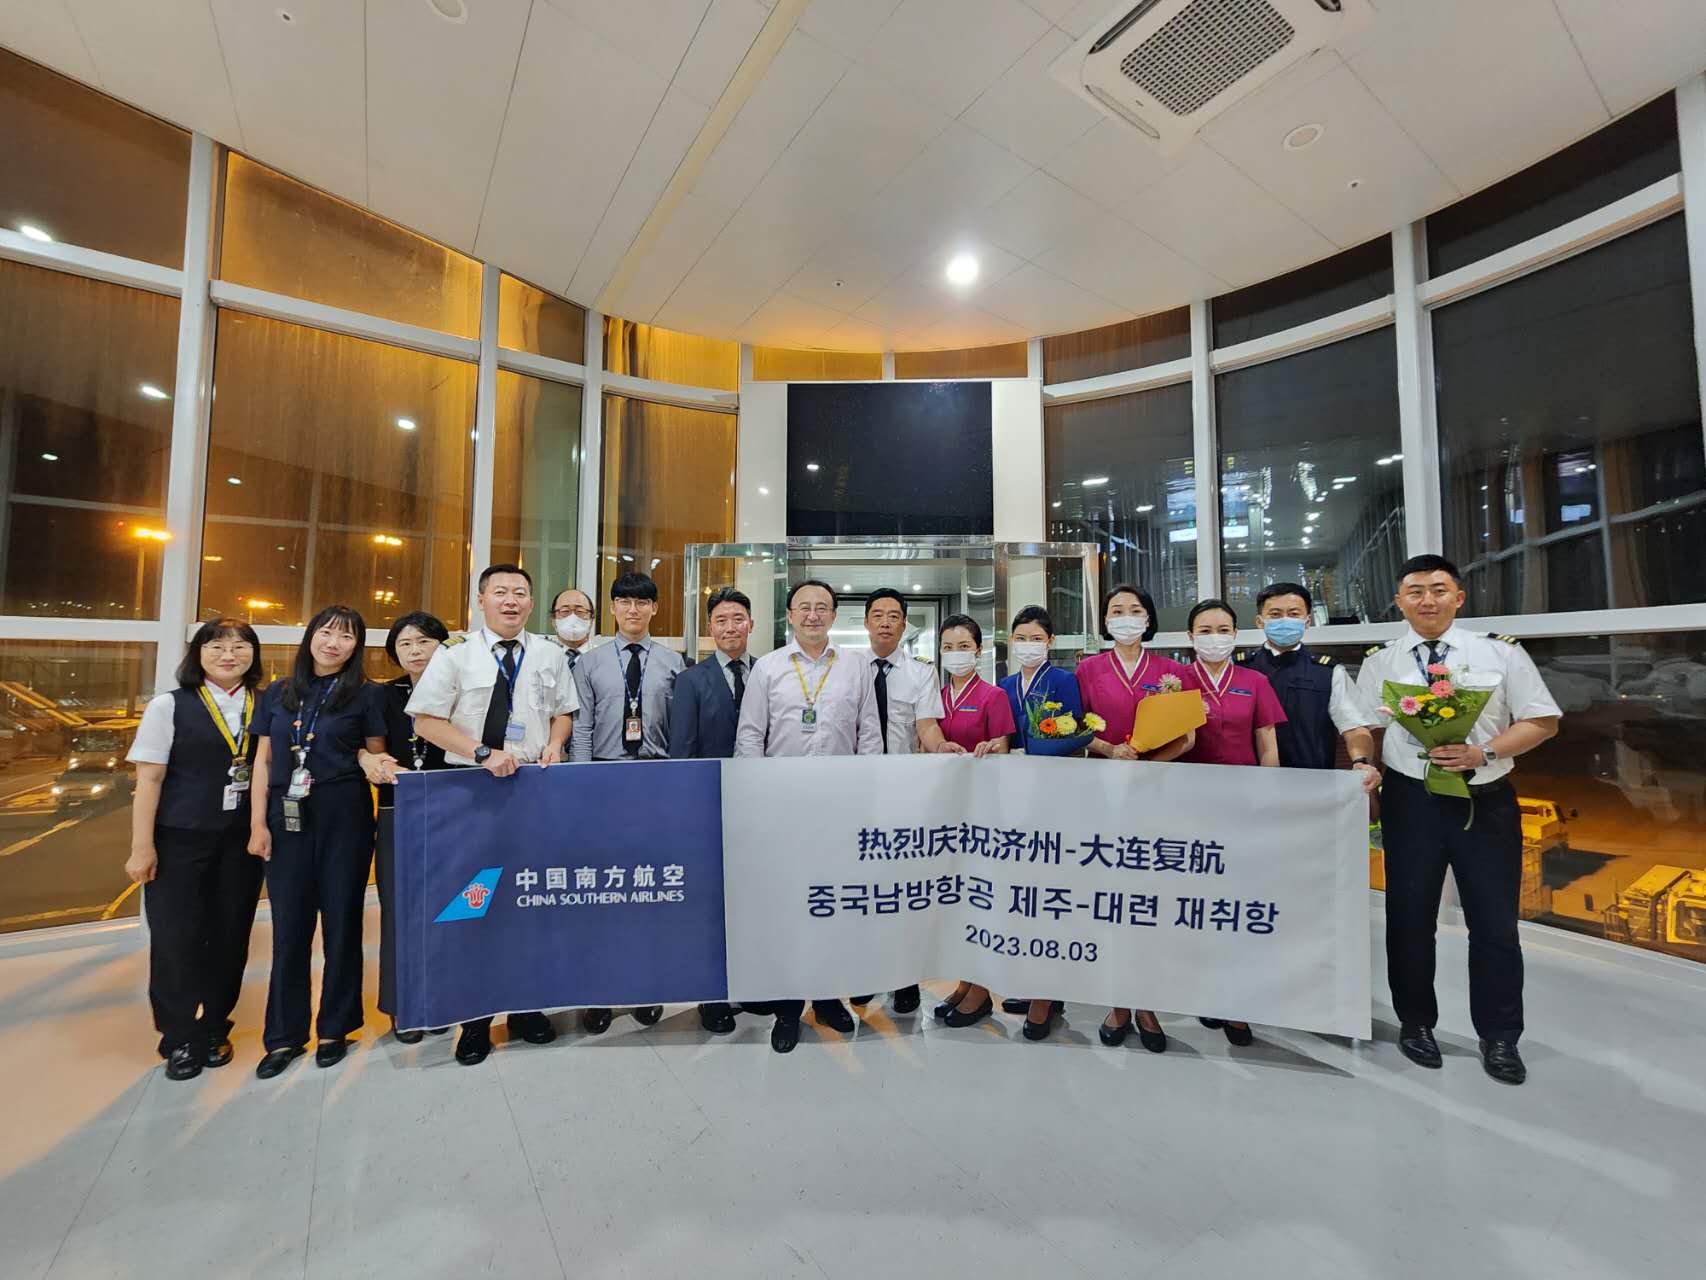 中国南方航空大连往返韩国济州航线8月3日复航。南航韩国营销中心供图